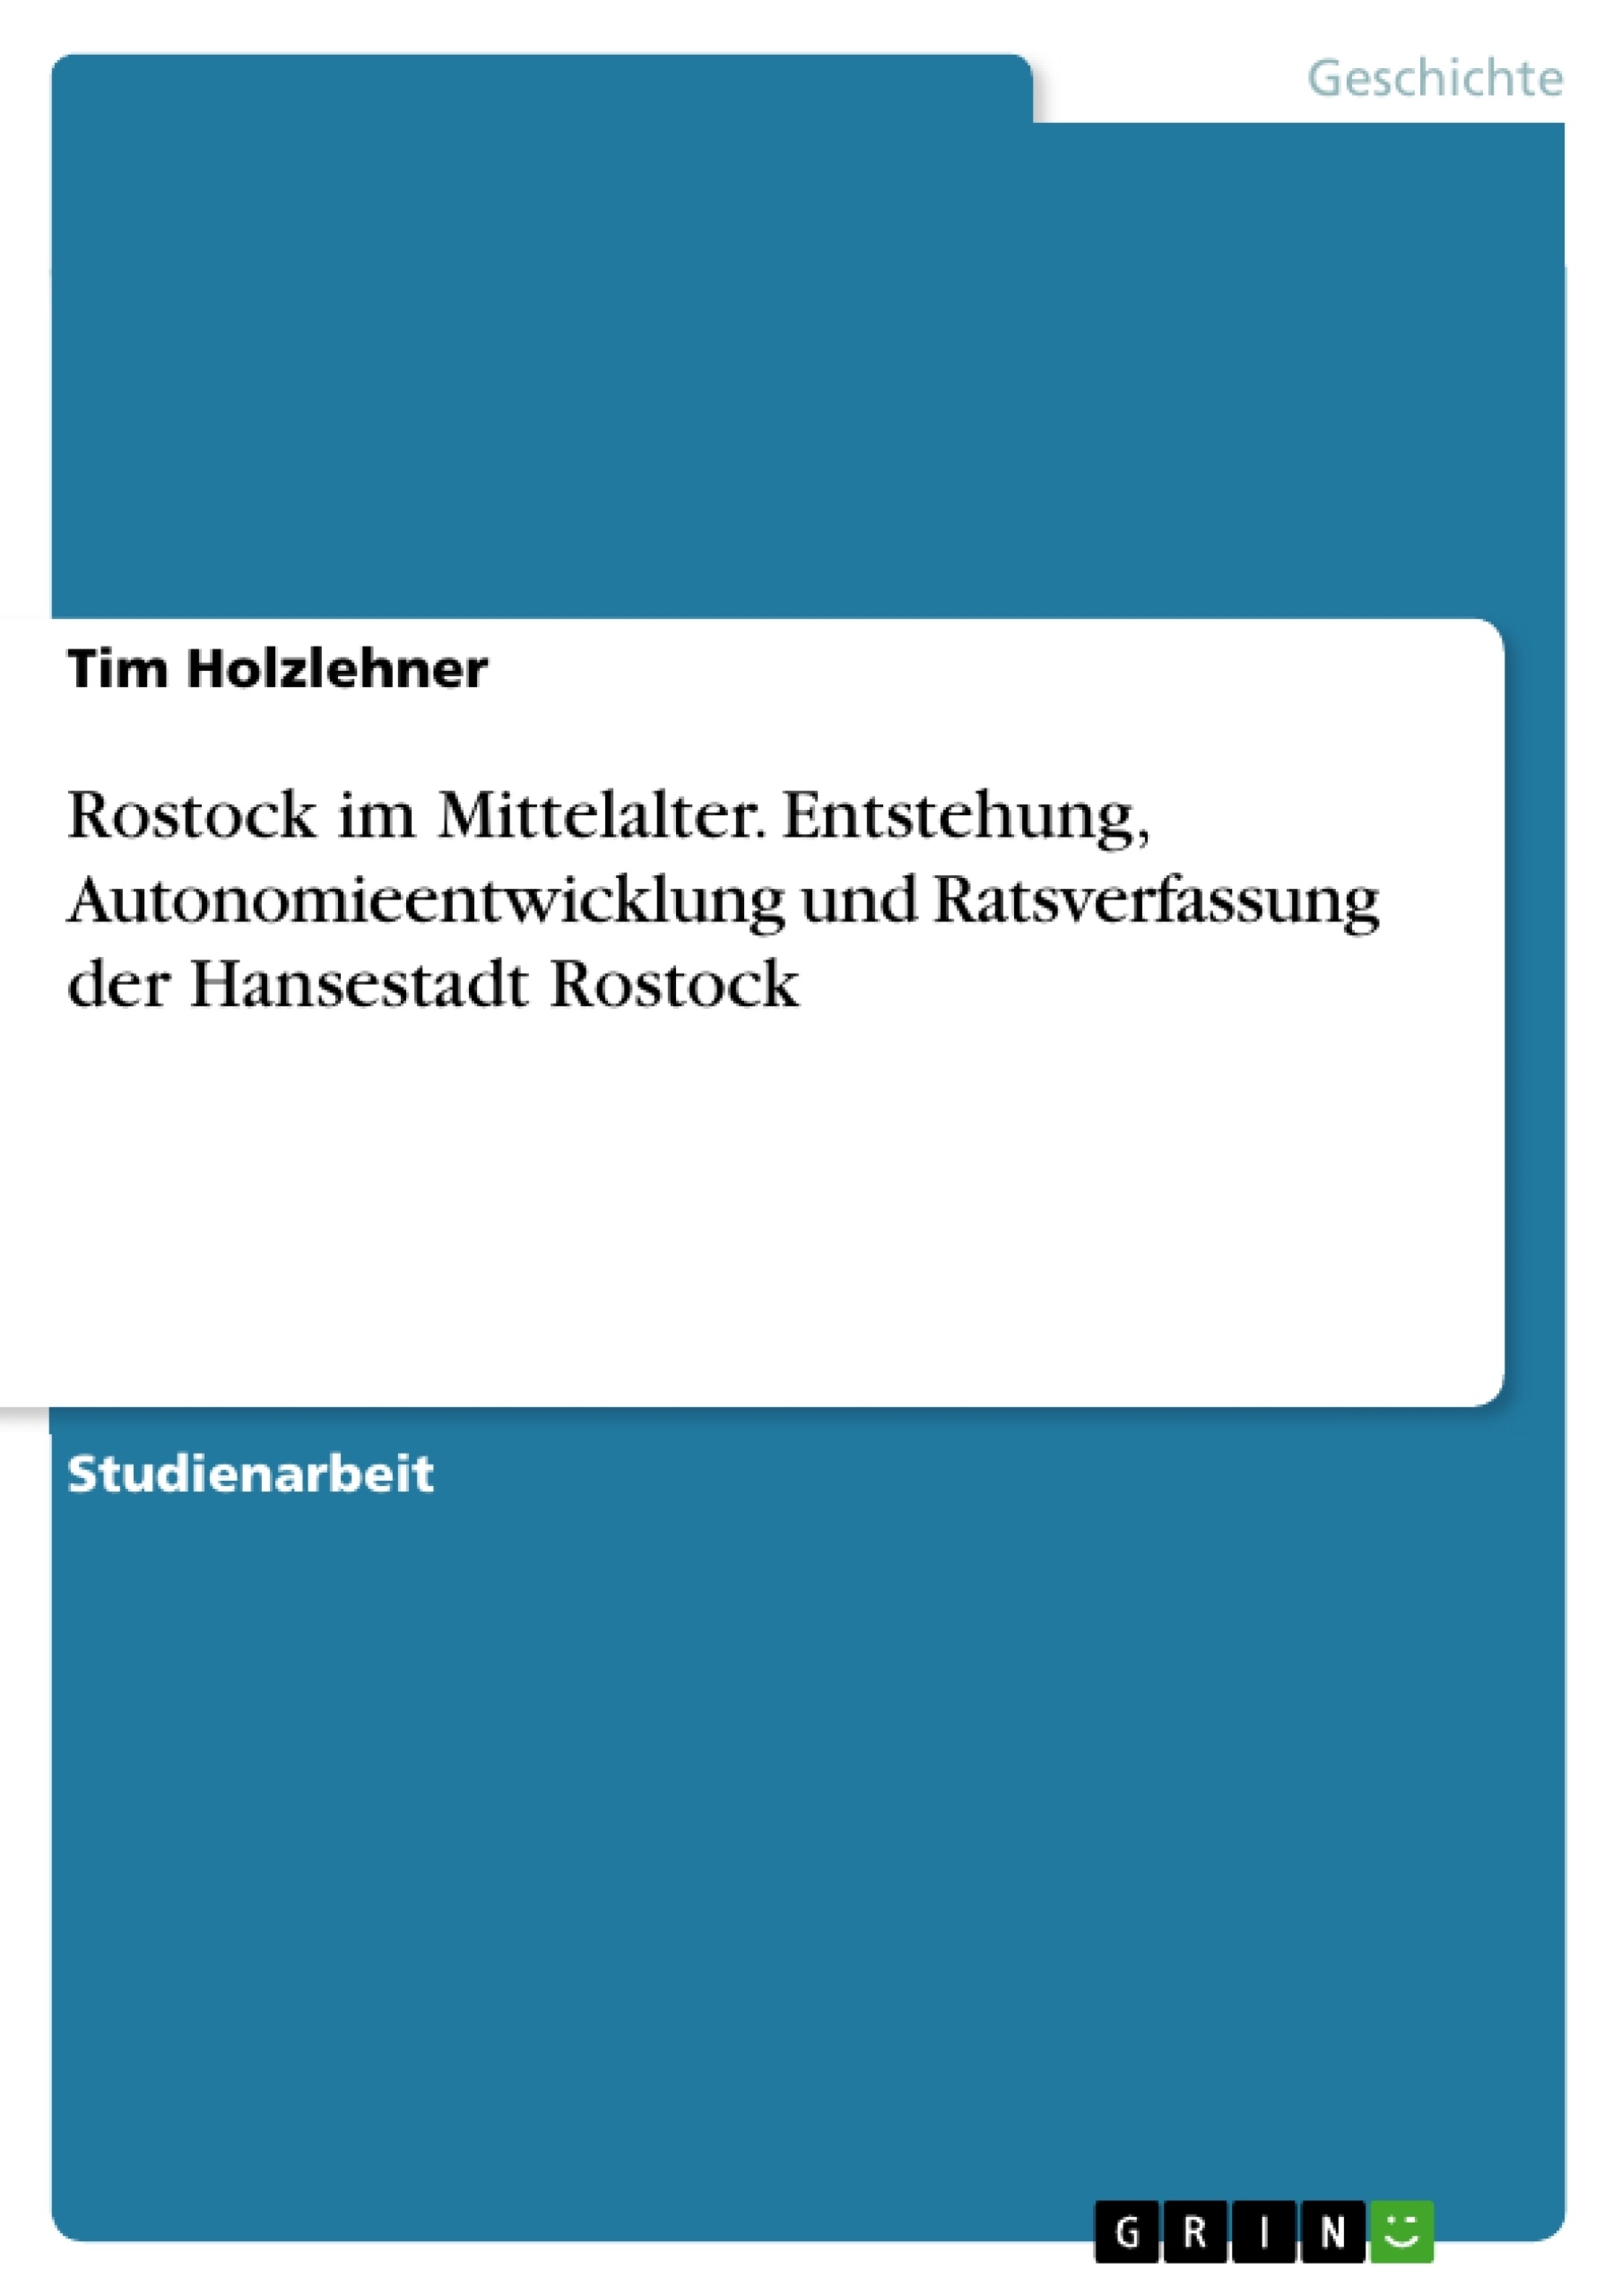 Title: Rostock im Mittelalter. Entstehung, Autonomieentwicklung und Ratsverfassung der Hansestadt Rostock